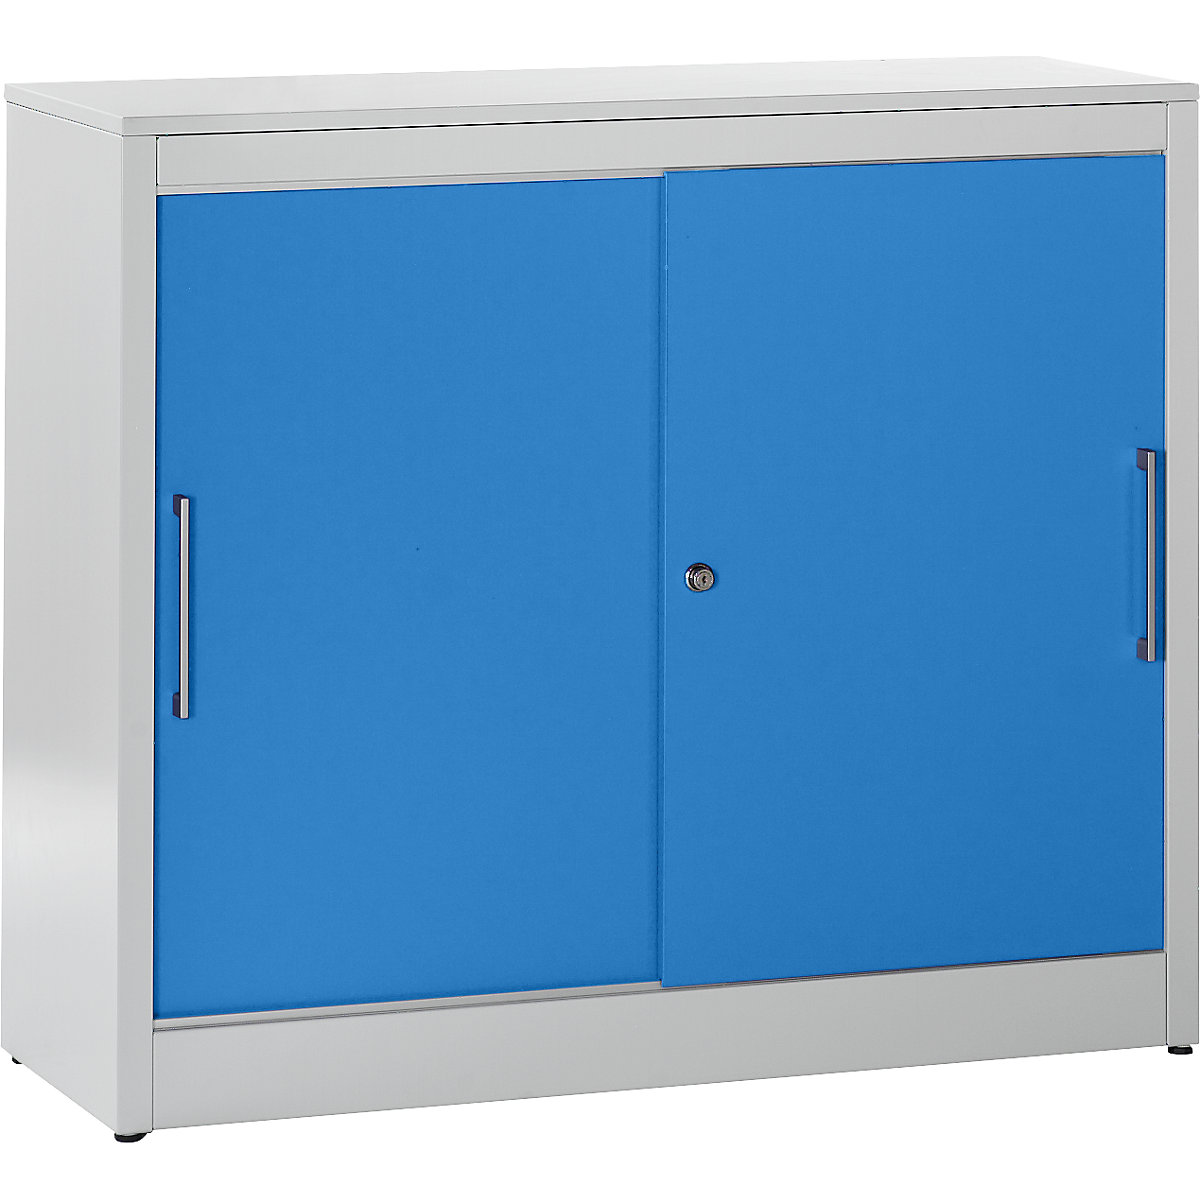 Schiebetürschrank mauser, Sideboard mit 2 Fachböden, HxBxT 1040 x 1200 x 420 mm, lichtgrau / lichtblau-7